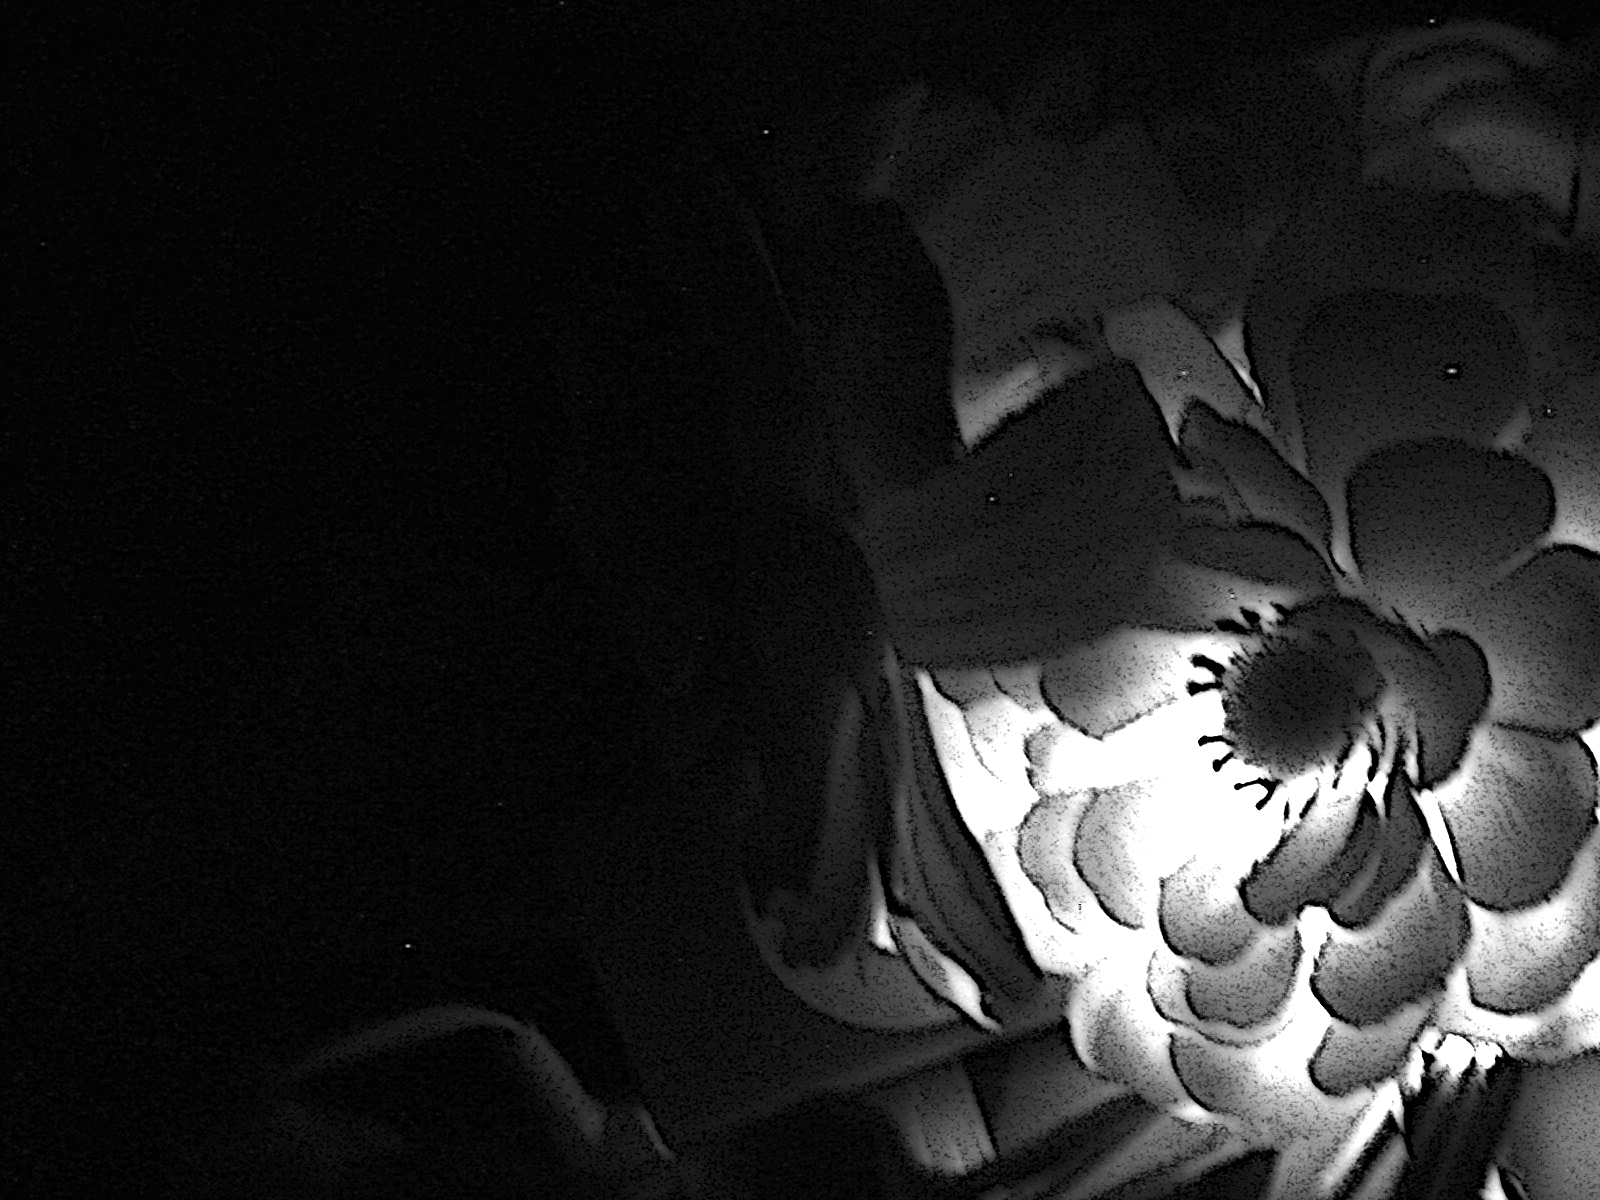 Flower in the dark photo